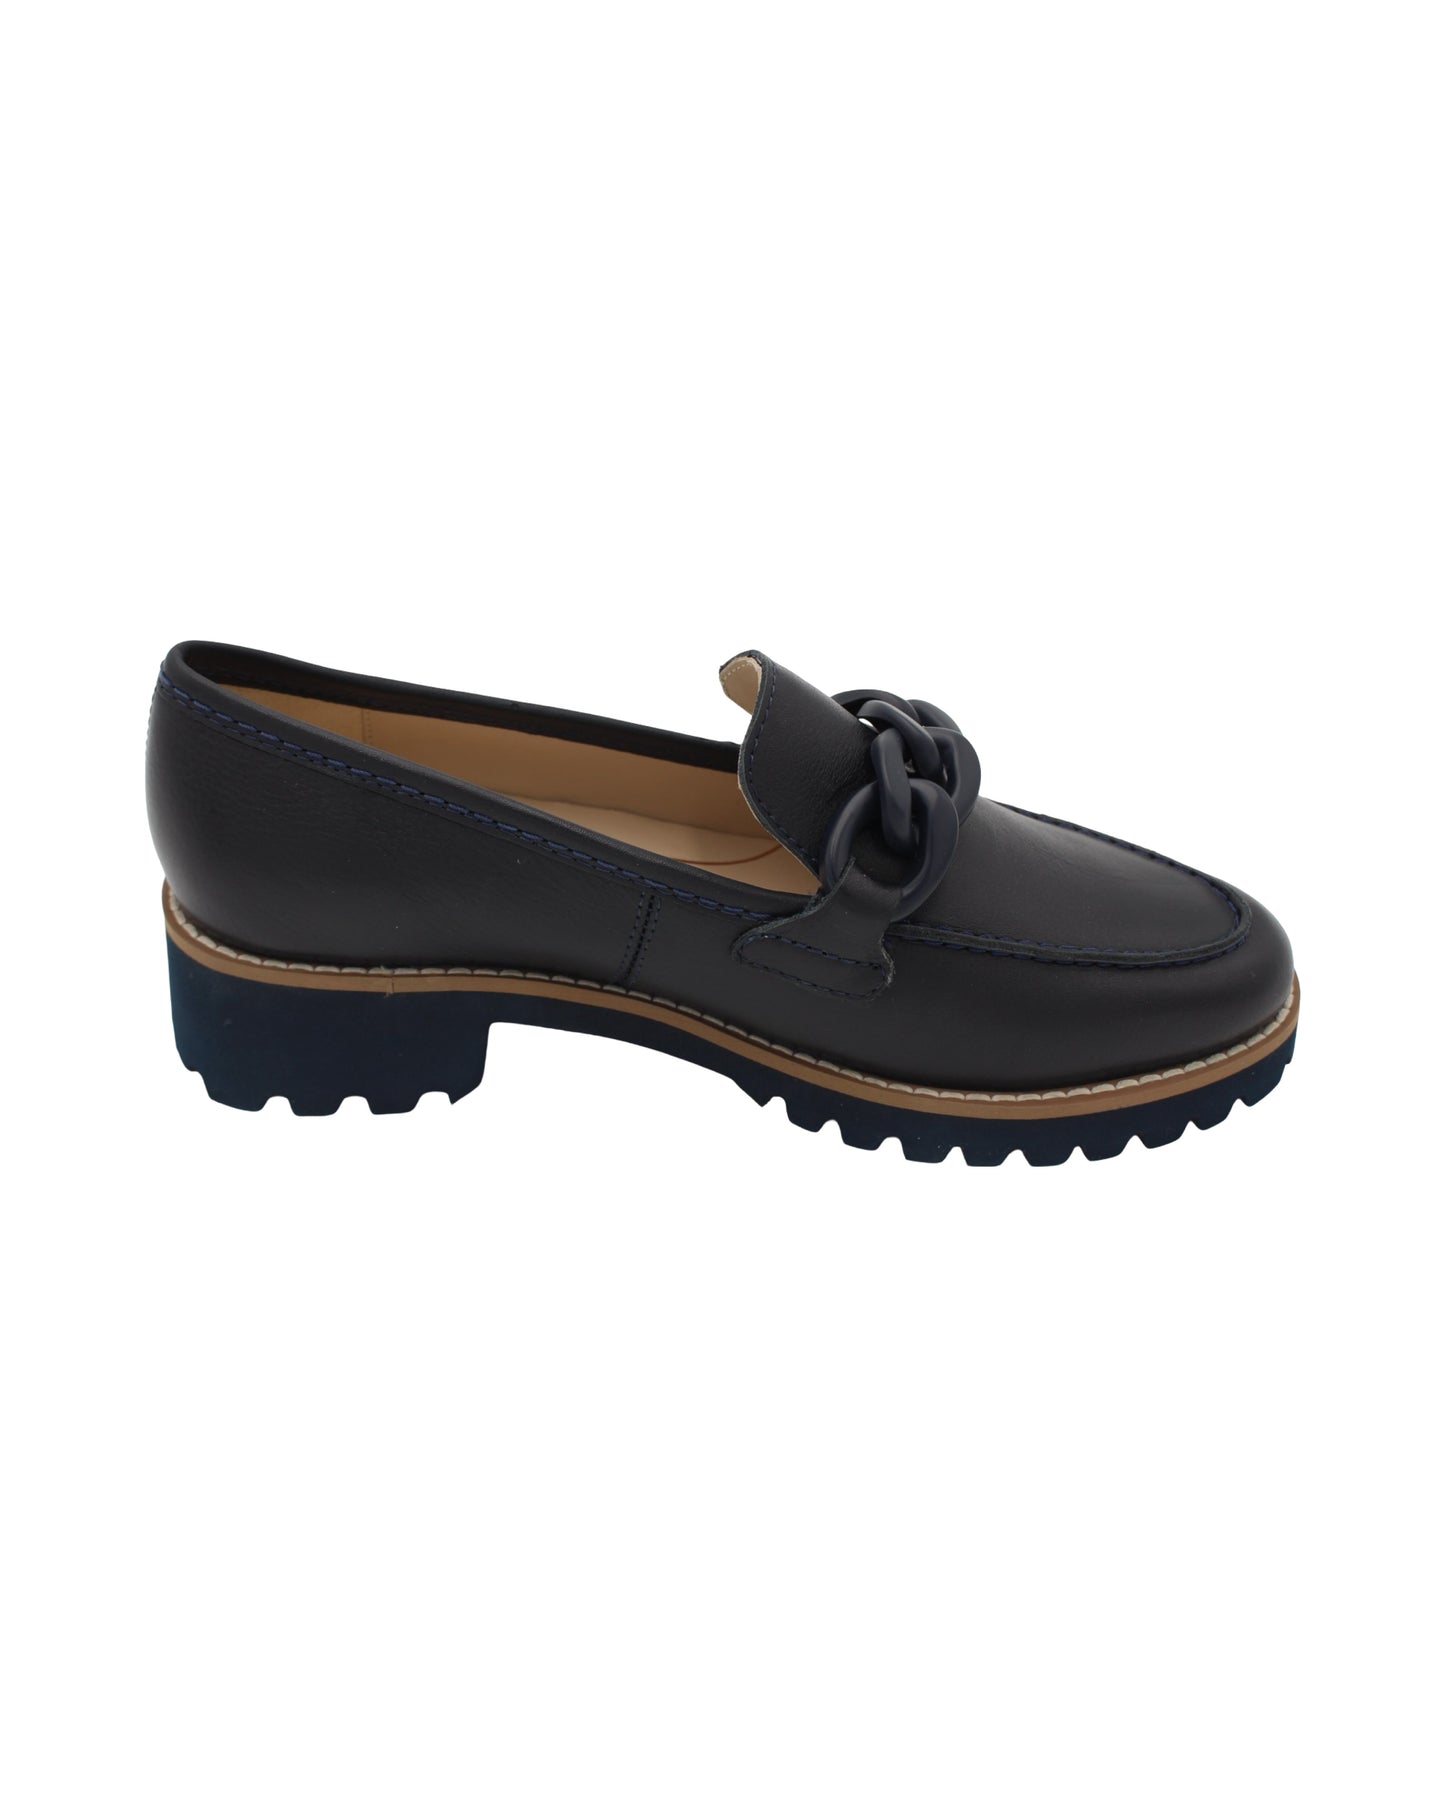 Ara - Ladies Shoes Loafers Black (2437)